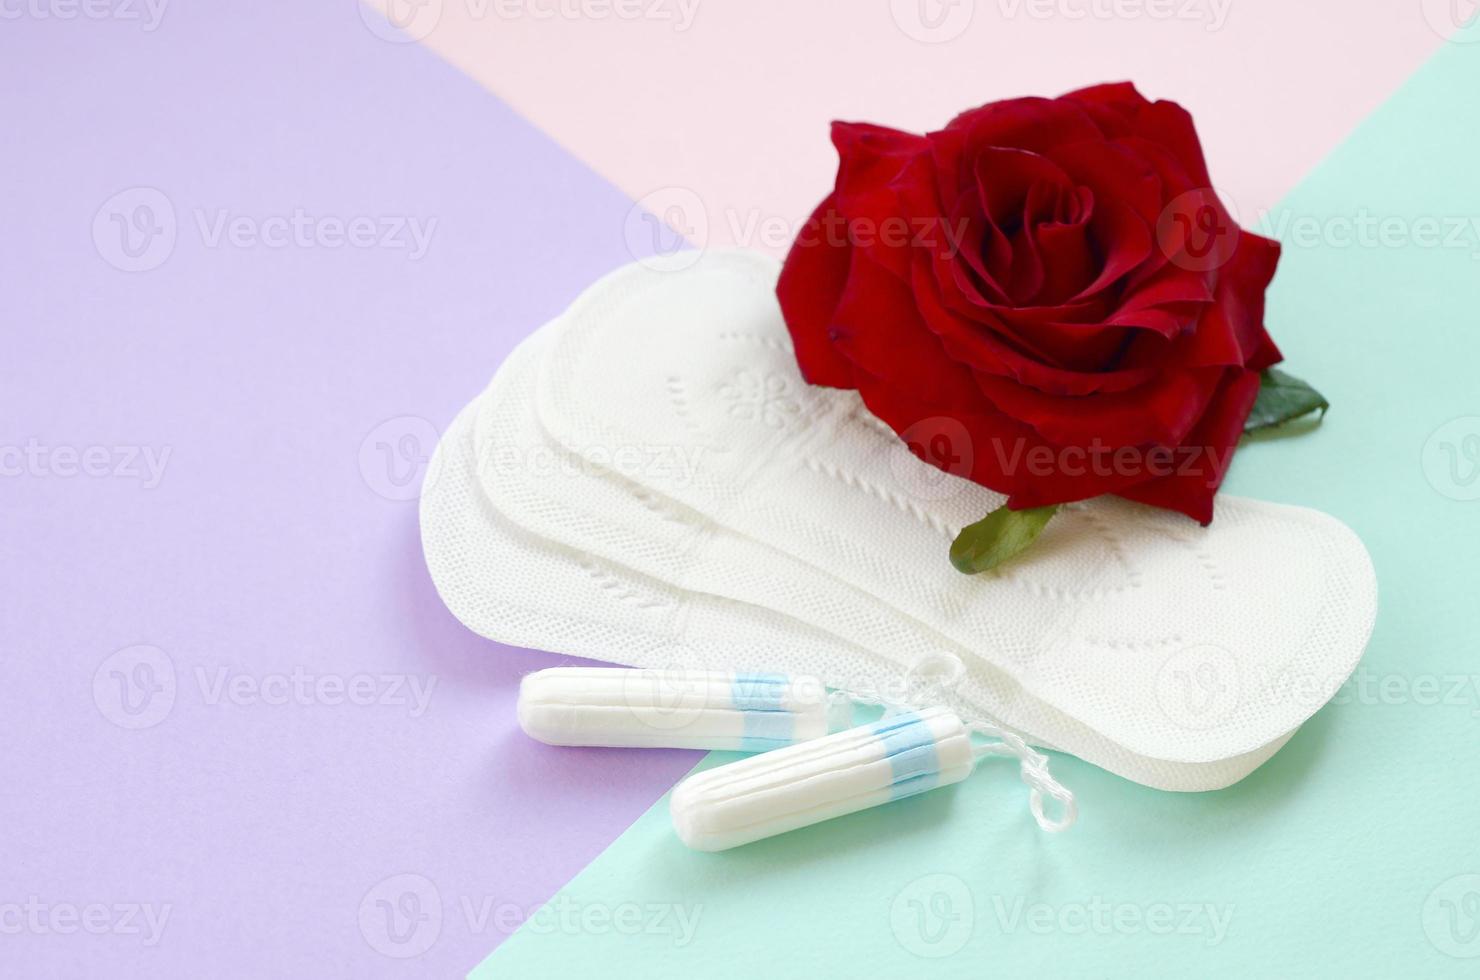 almofadas menstruais e tampões com flor rosa vermelha em fundo multicolorido foto